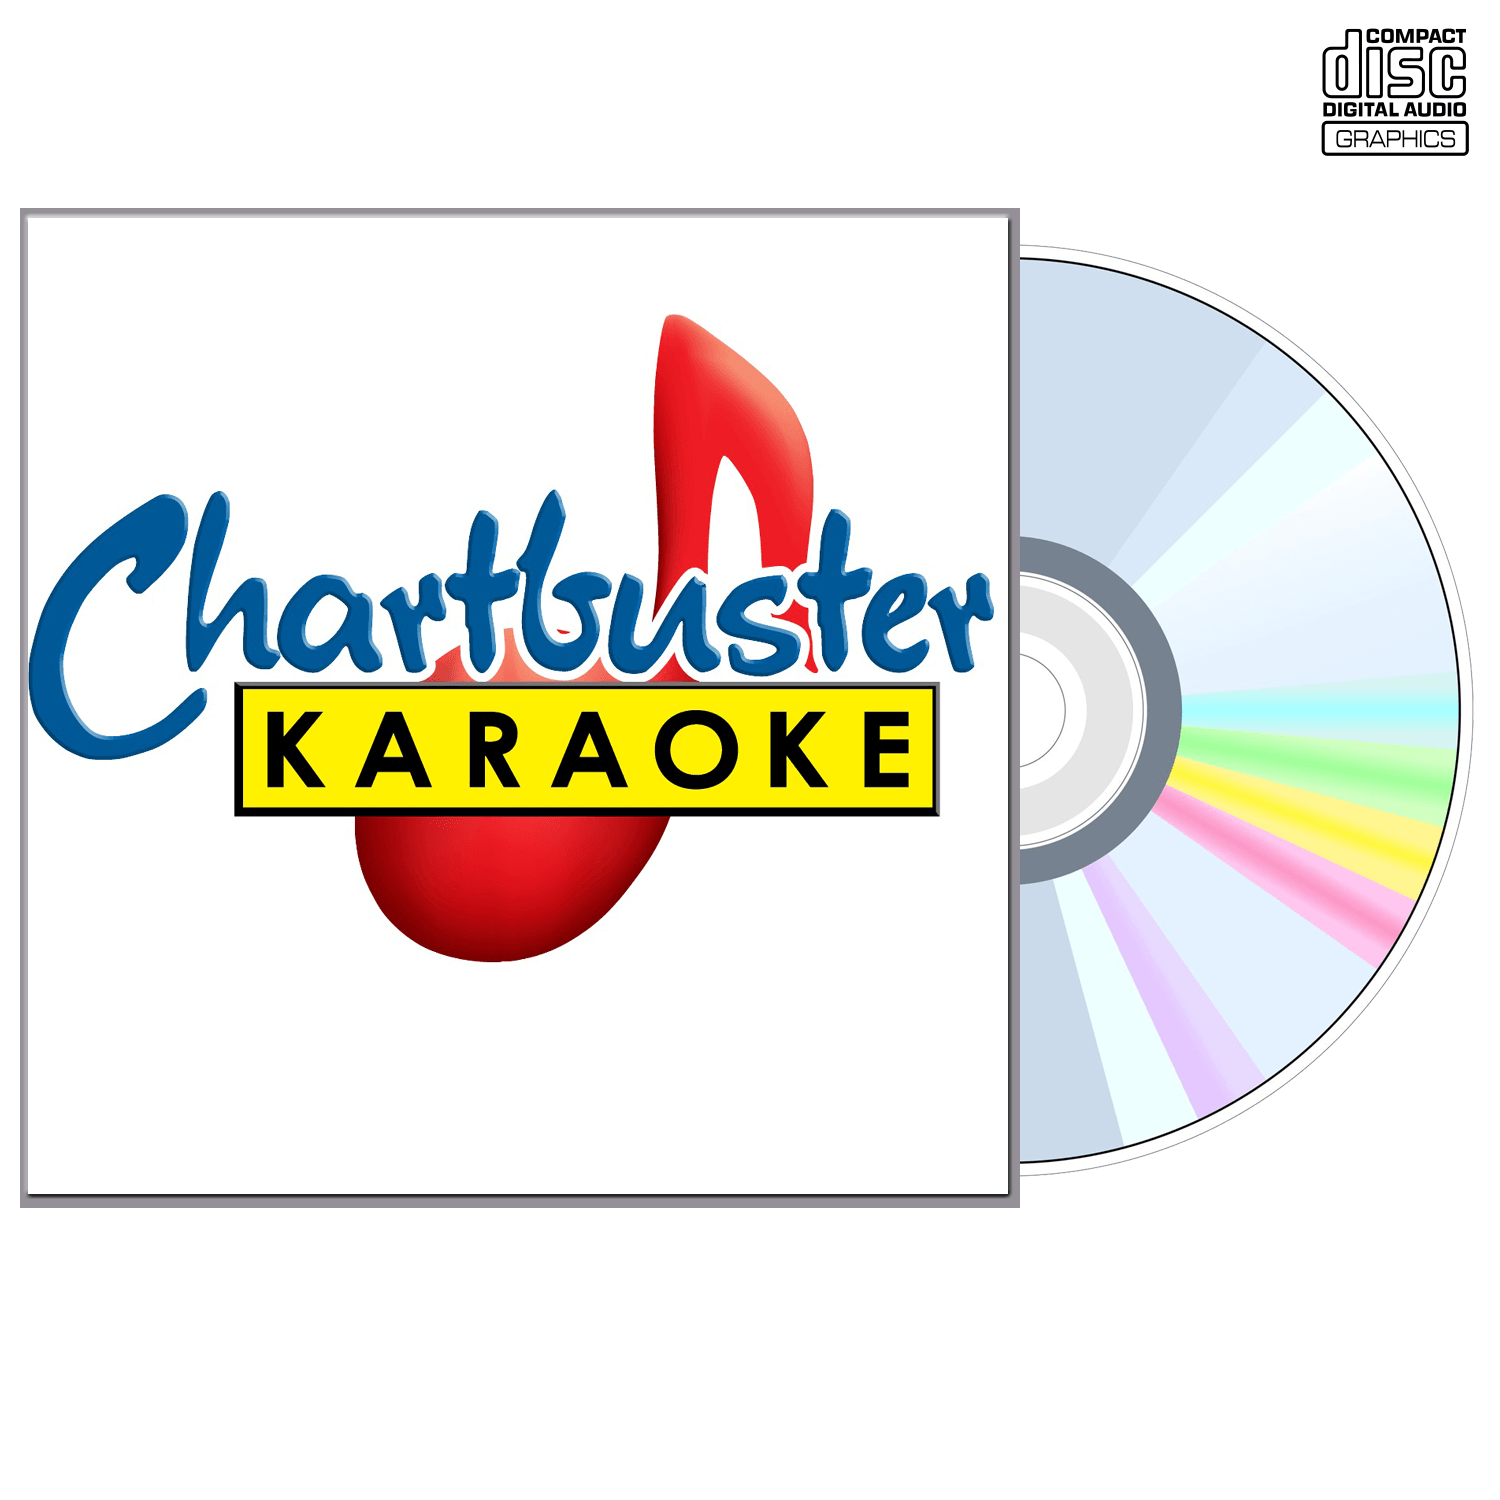 Susan Ashton - CD+G - Chartbuster Karaoke - Karaoke Home Entertainment